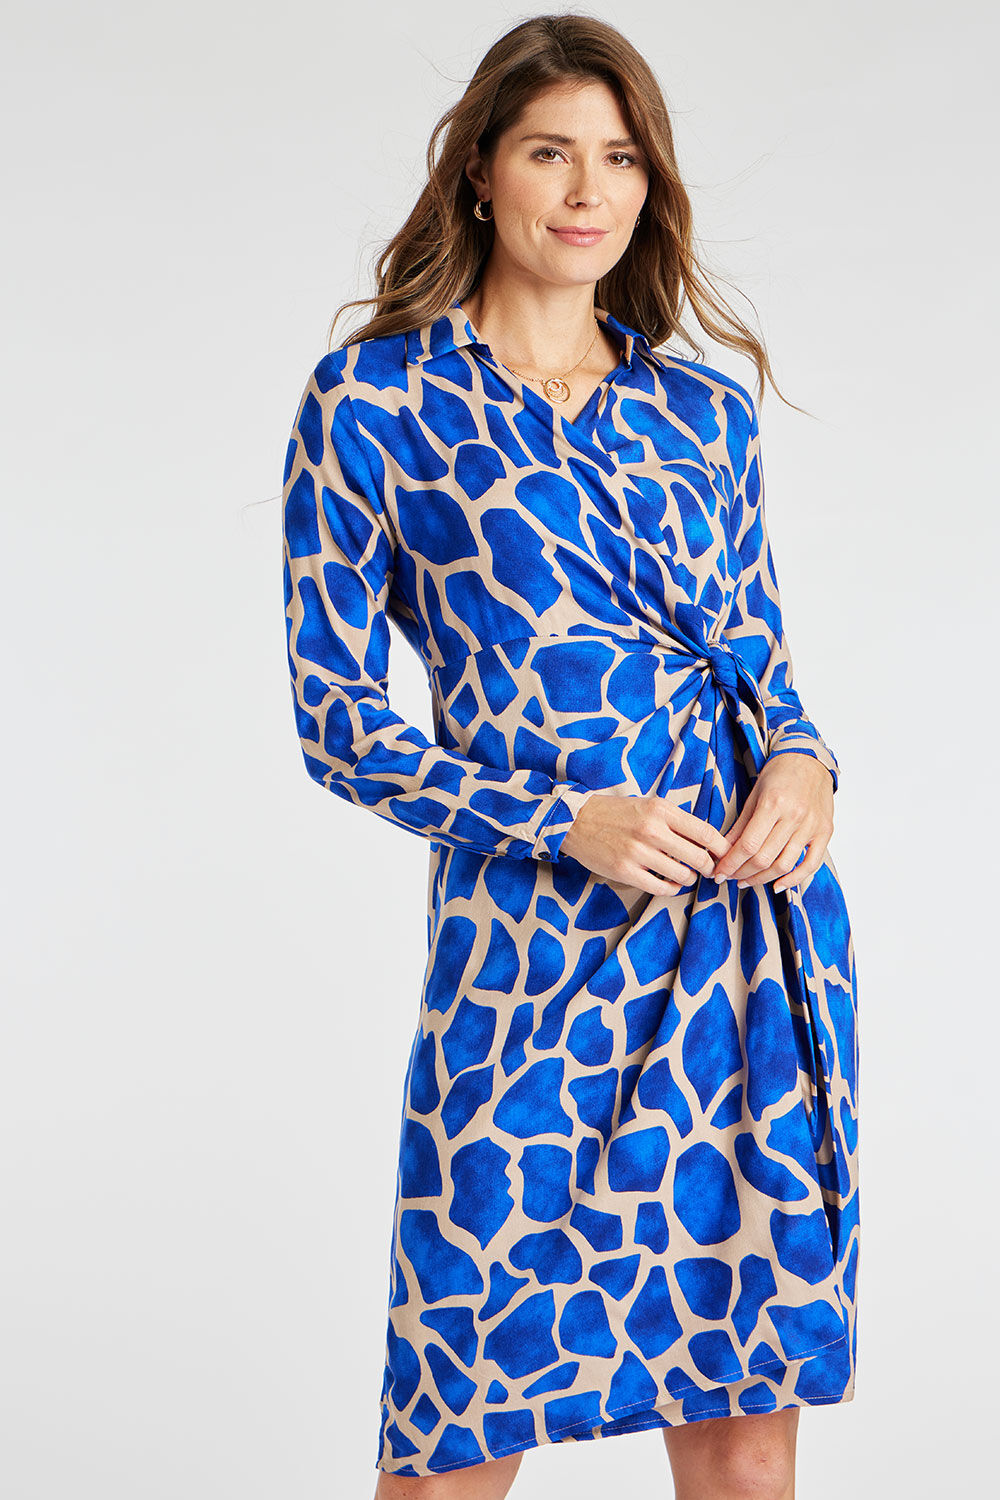 Bonmarche Blue Giraffe Print Wrap Front Dress, Size: 14